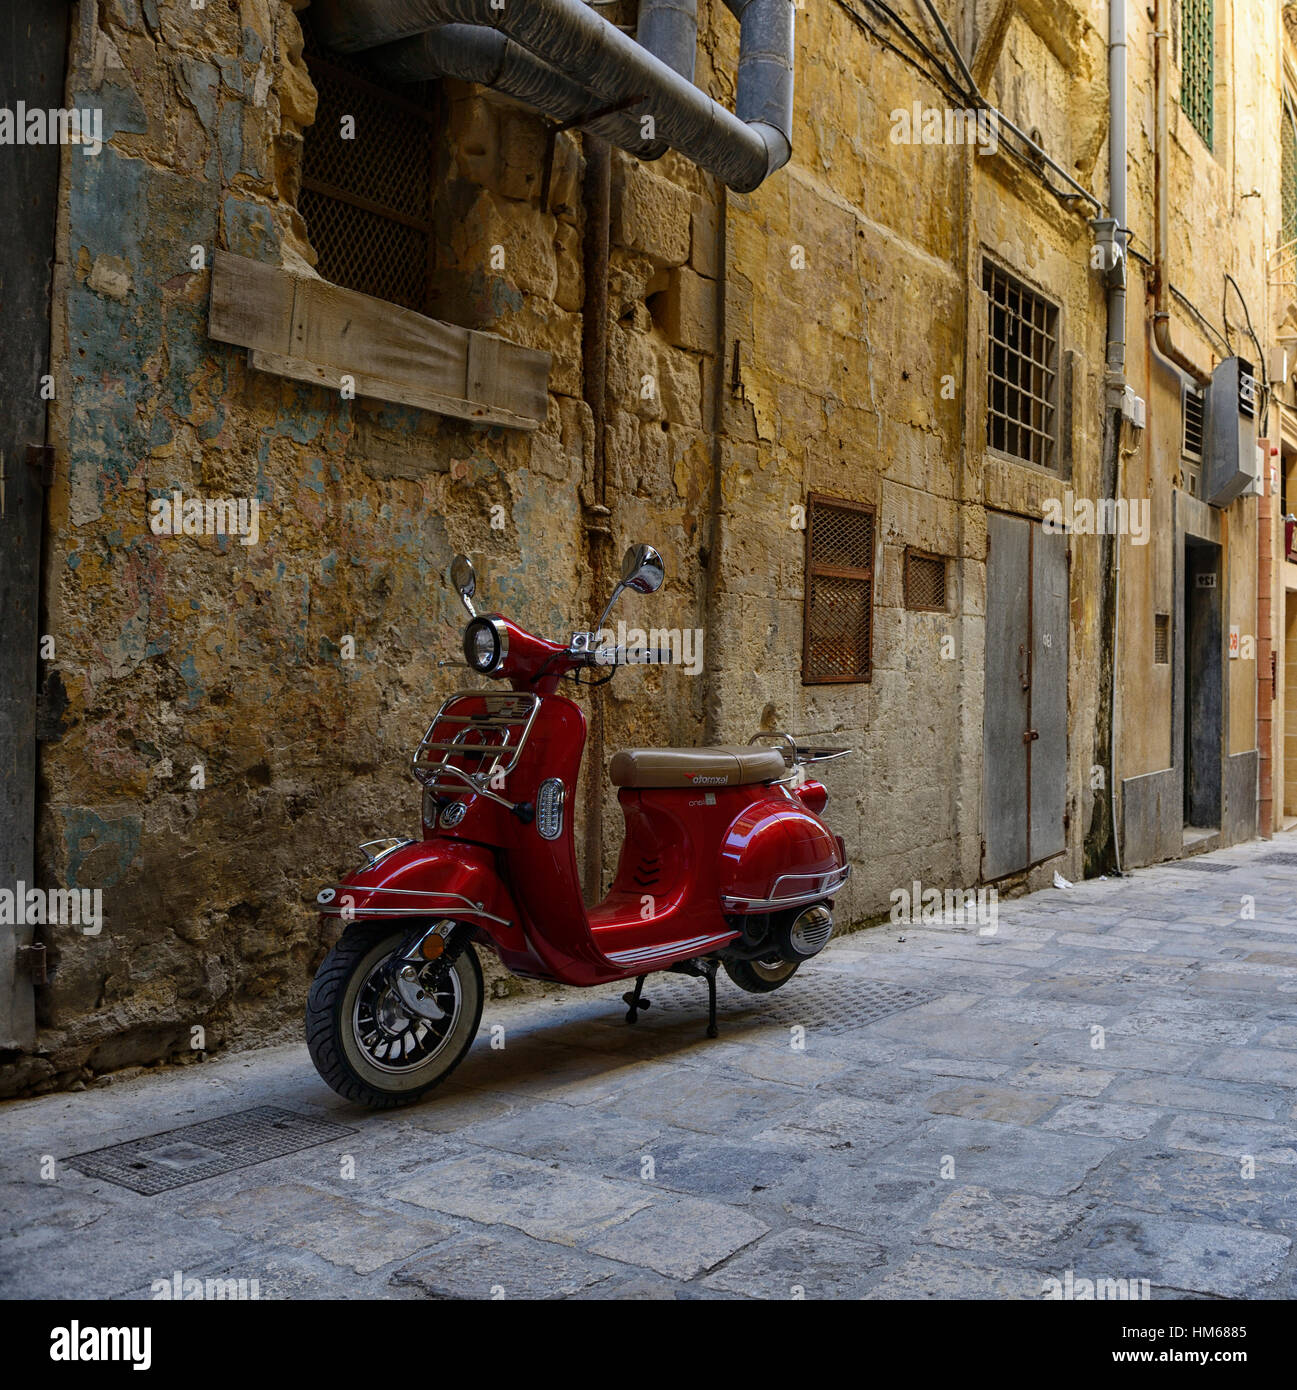 Rote Lexmoto Roller Moped Motorrad Motorrad Transport Transport Seite Straße Straßen Park geparkt Valletta Malta RM Welt Stockfoto